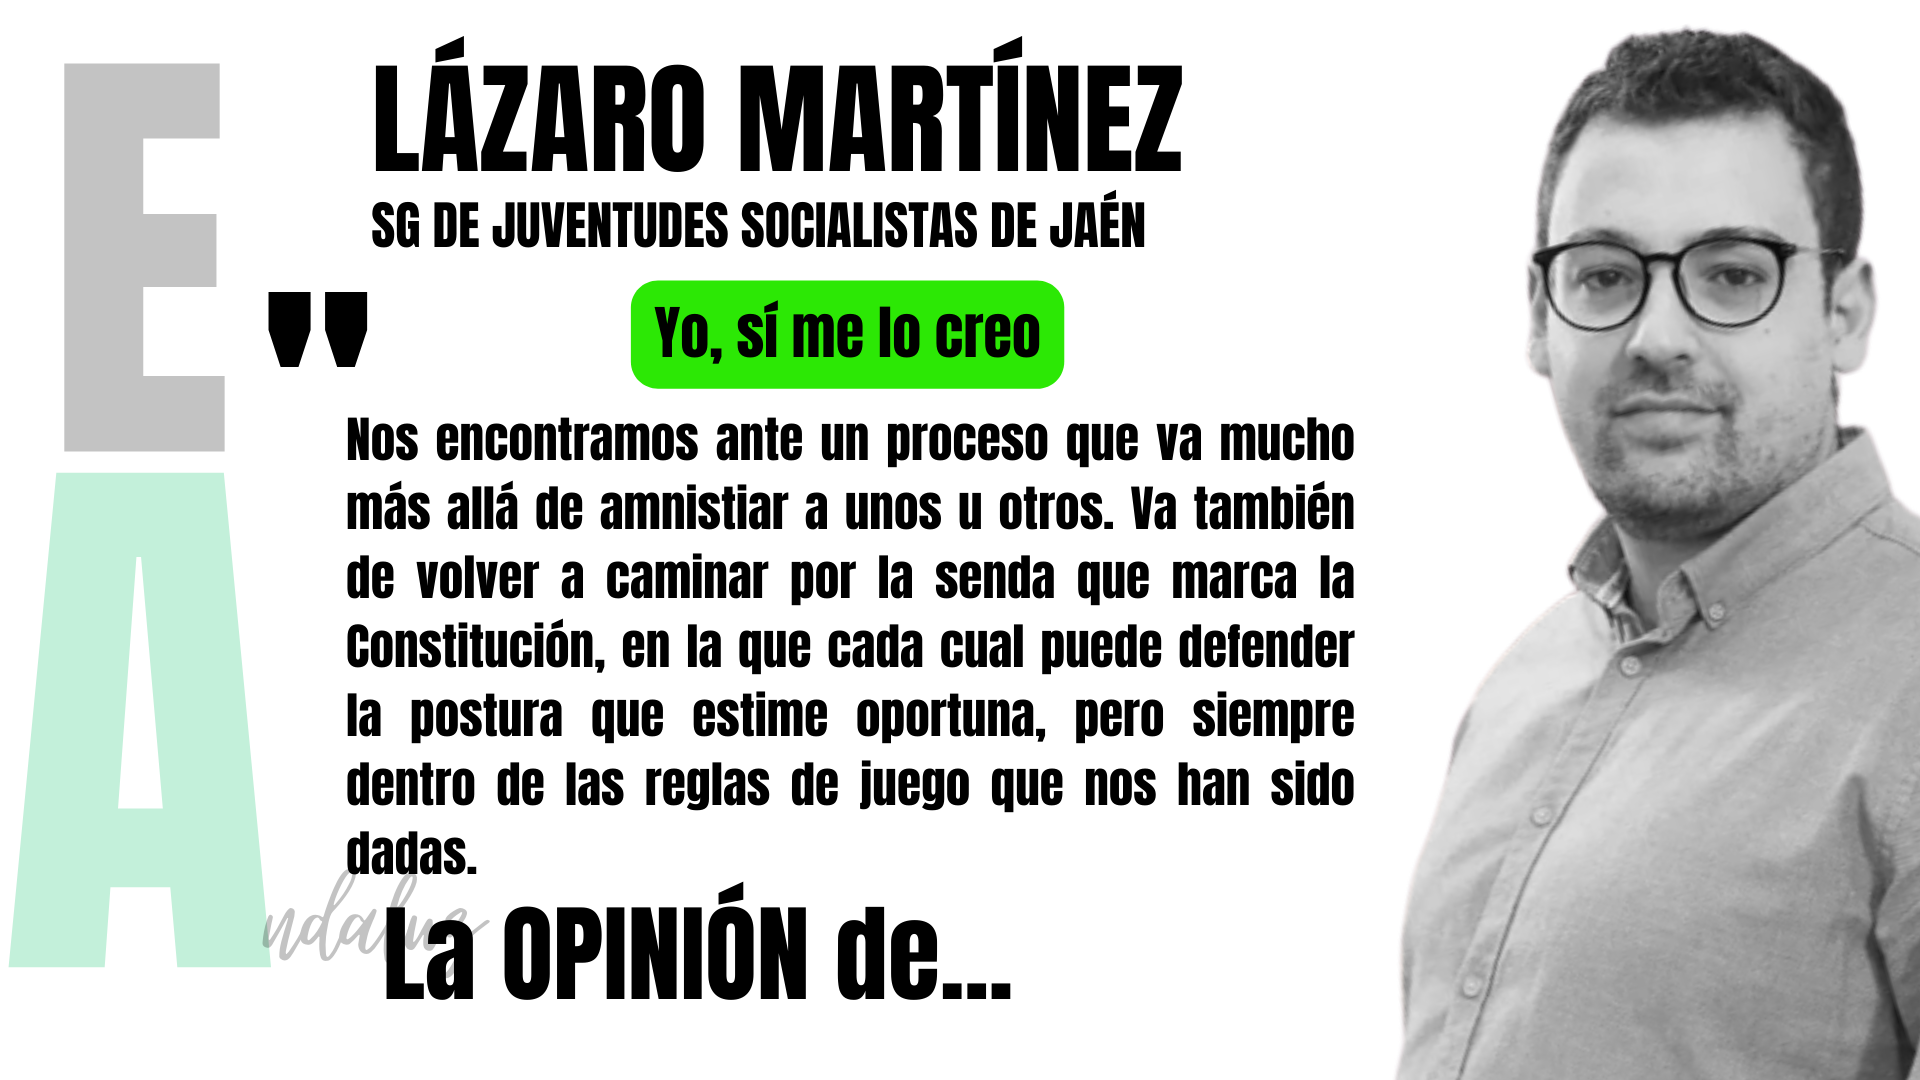 Artículo de opinión de Lázaro Martínez, secretario general de JSA de Jaén: "Yo, sí me lo creo"